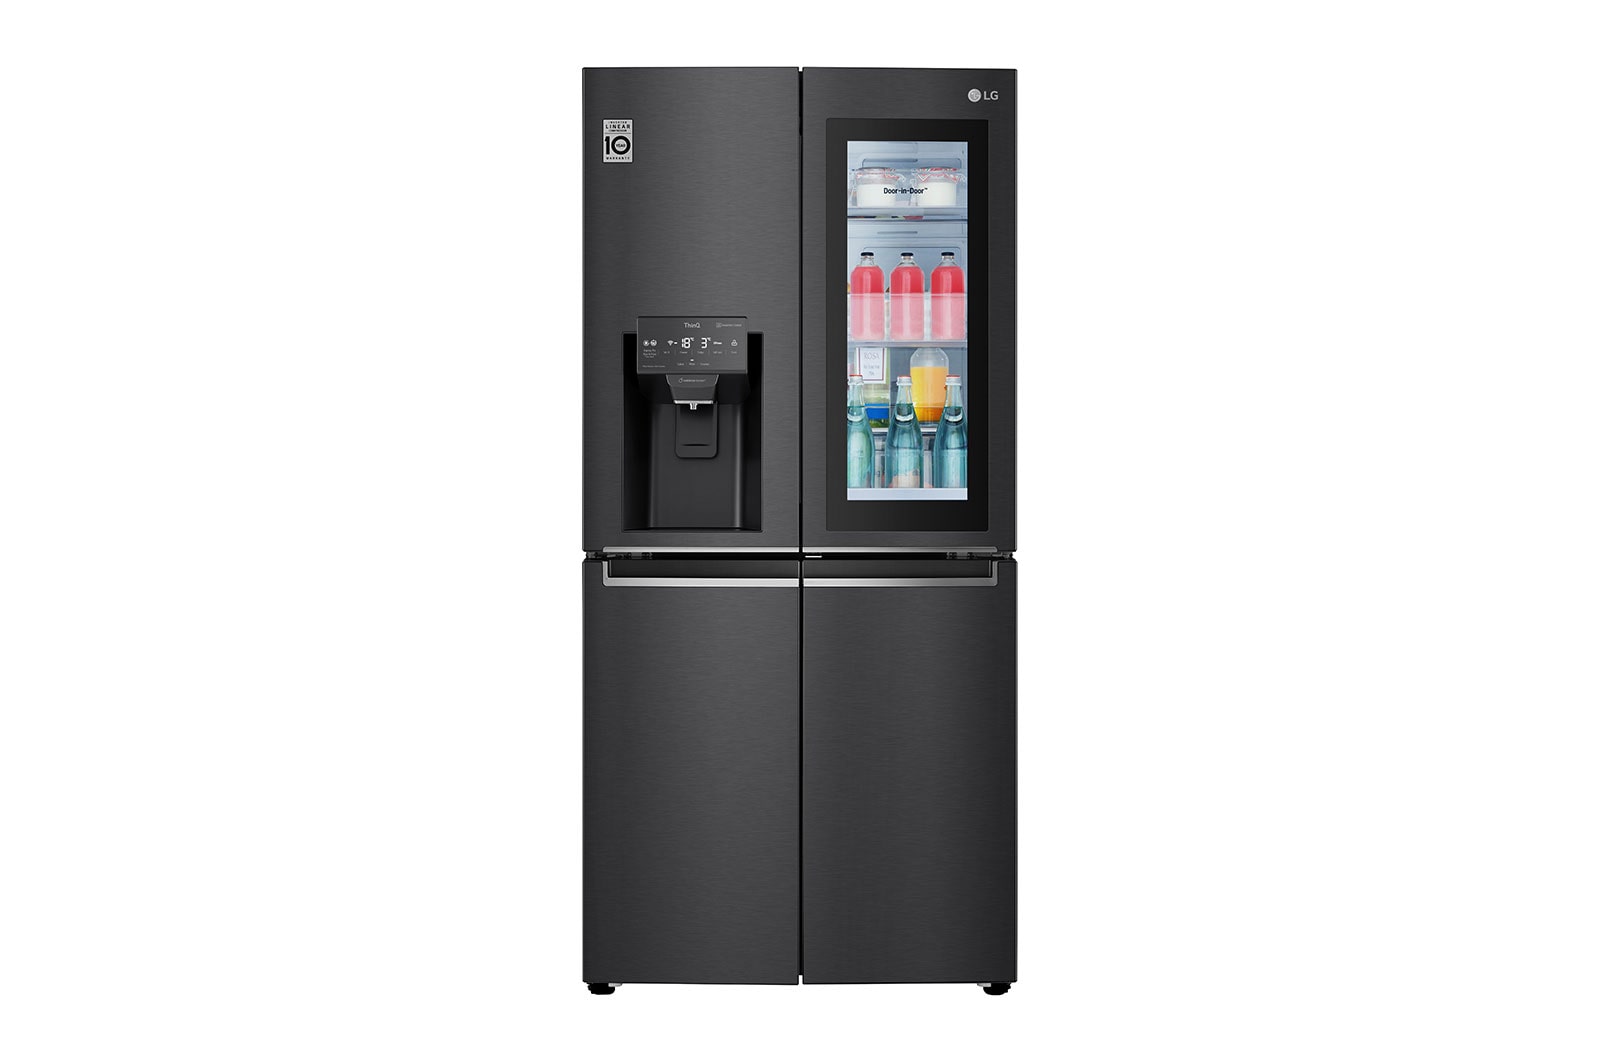 LG InstaView Door-in-Door | GMX844MC6F | American Style Fridge Freezer | 508L | WiFi Connected | Matte Black, GMX844MC6F